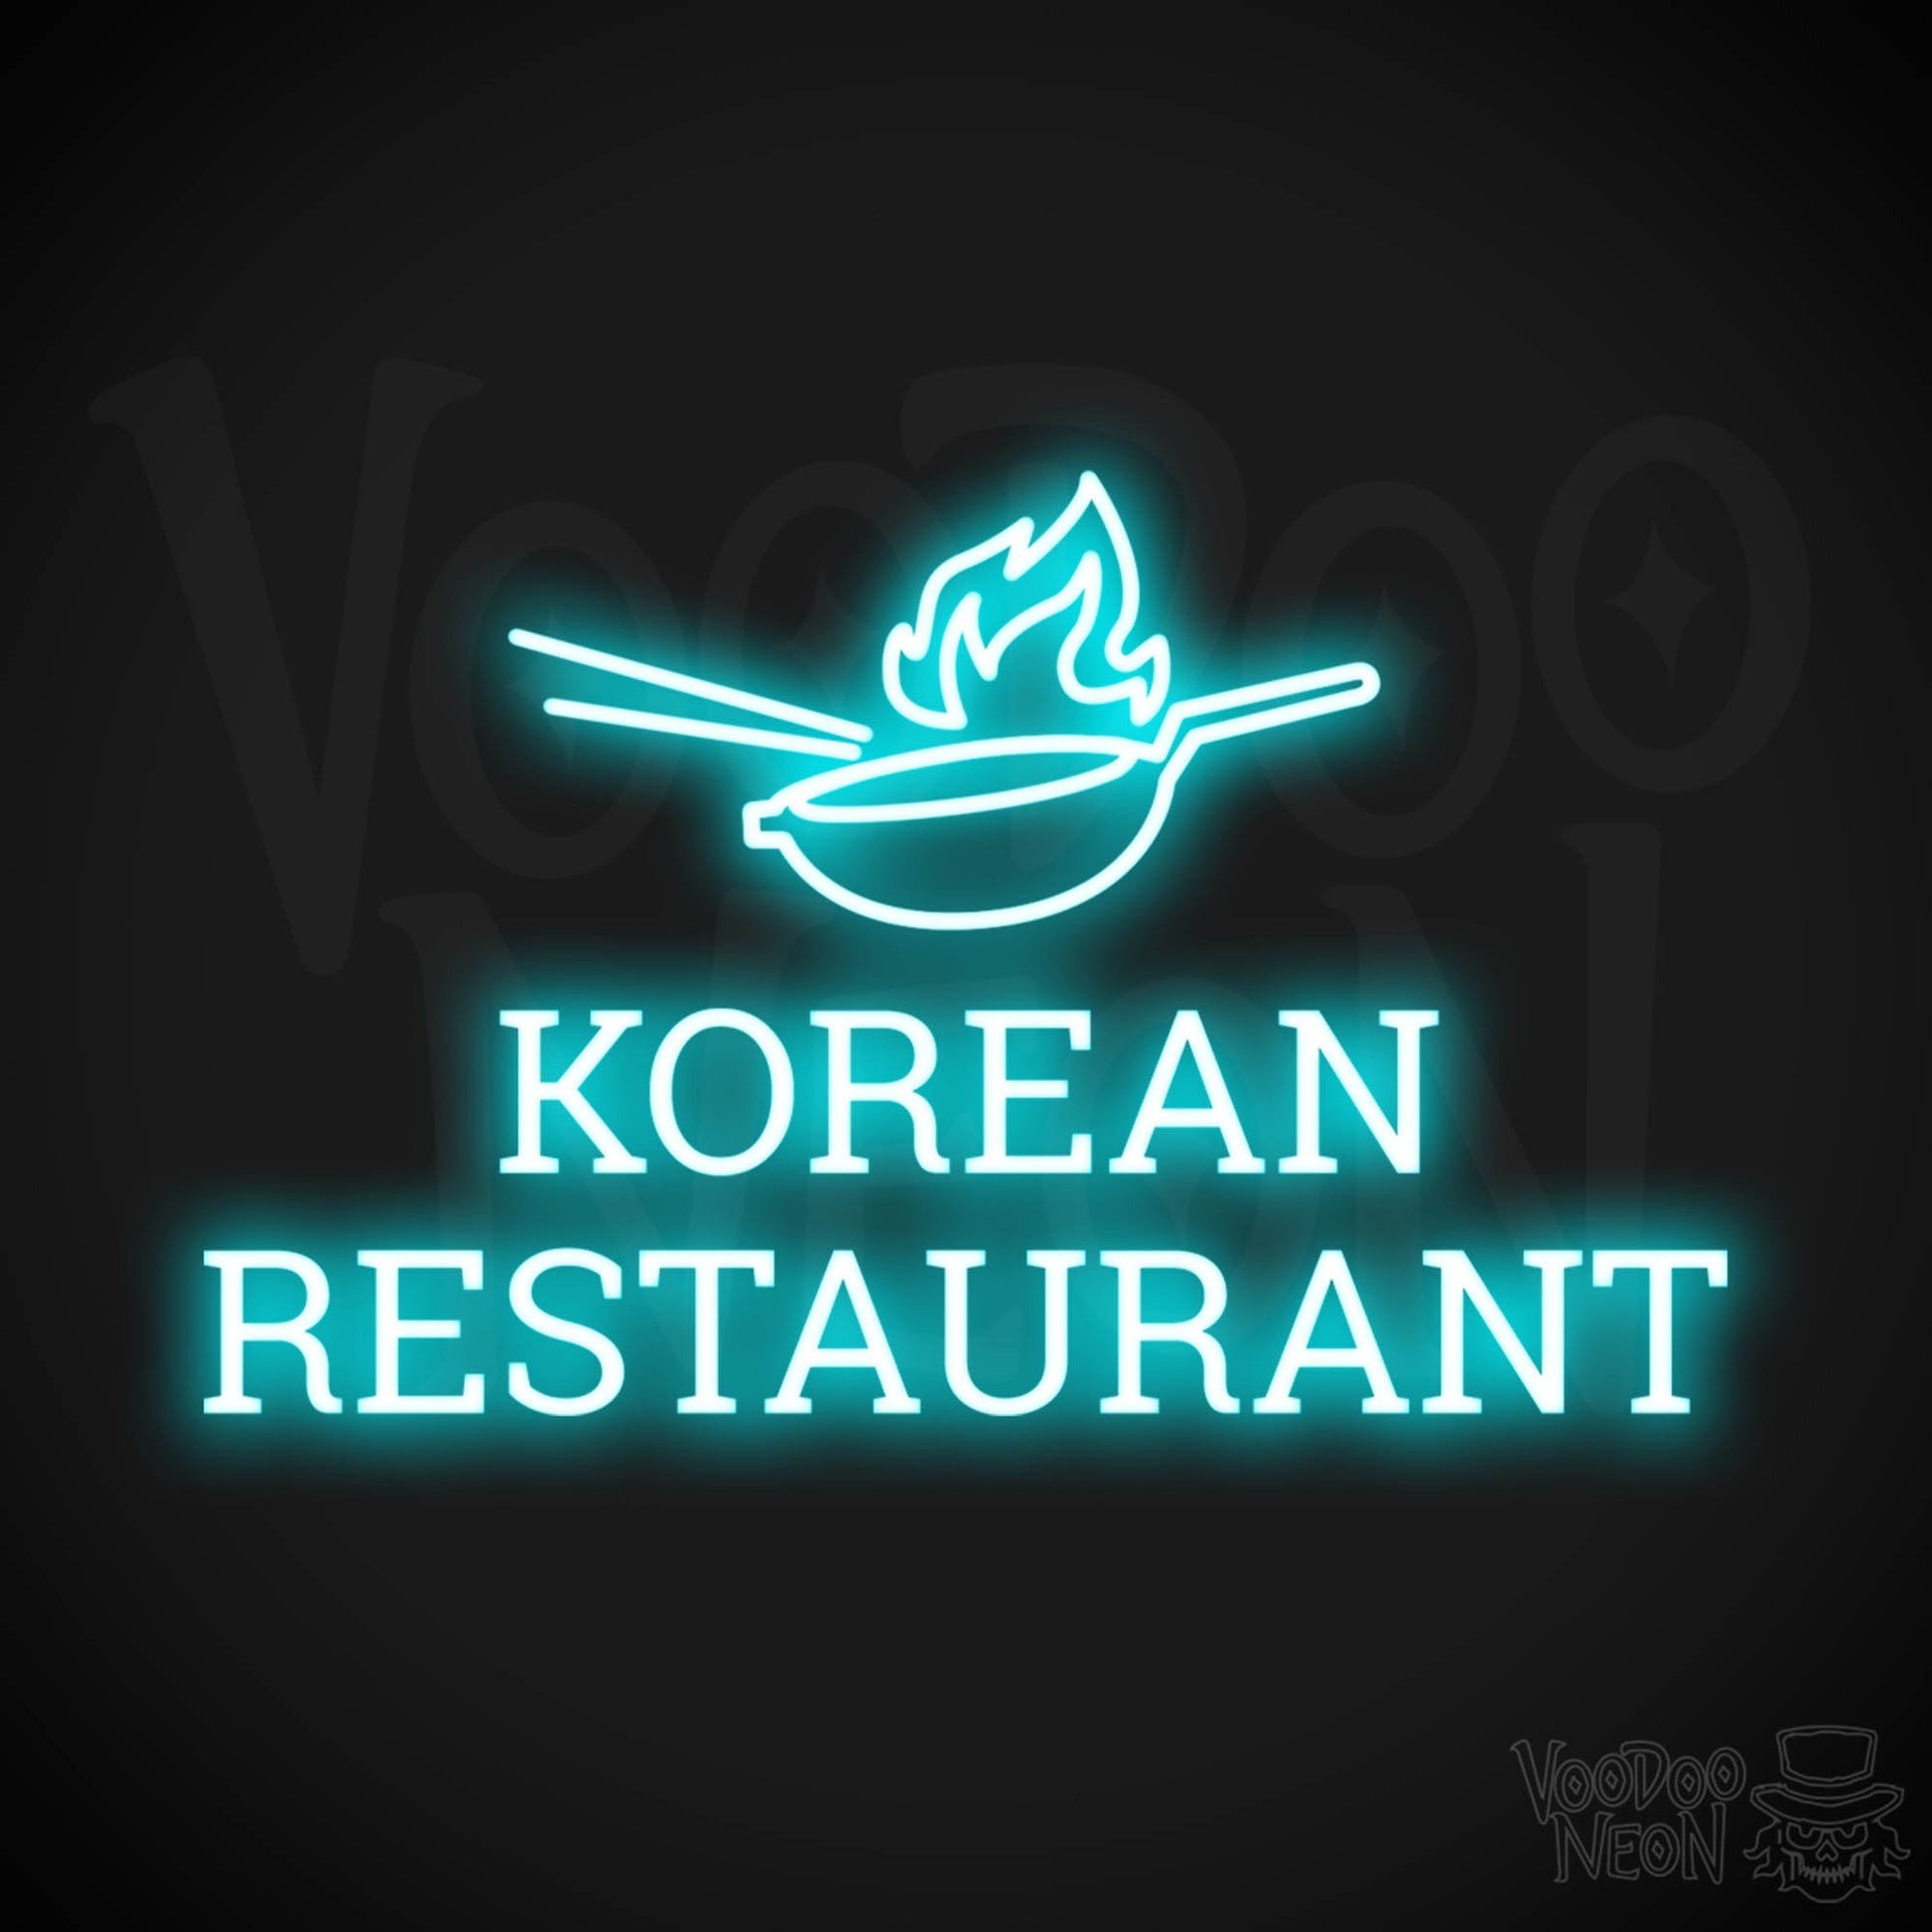 Korean Restaurant LED Neon - Ice Blue